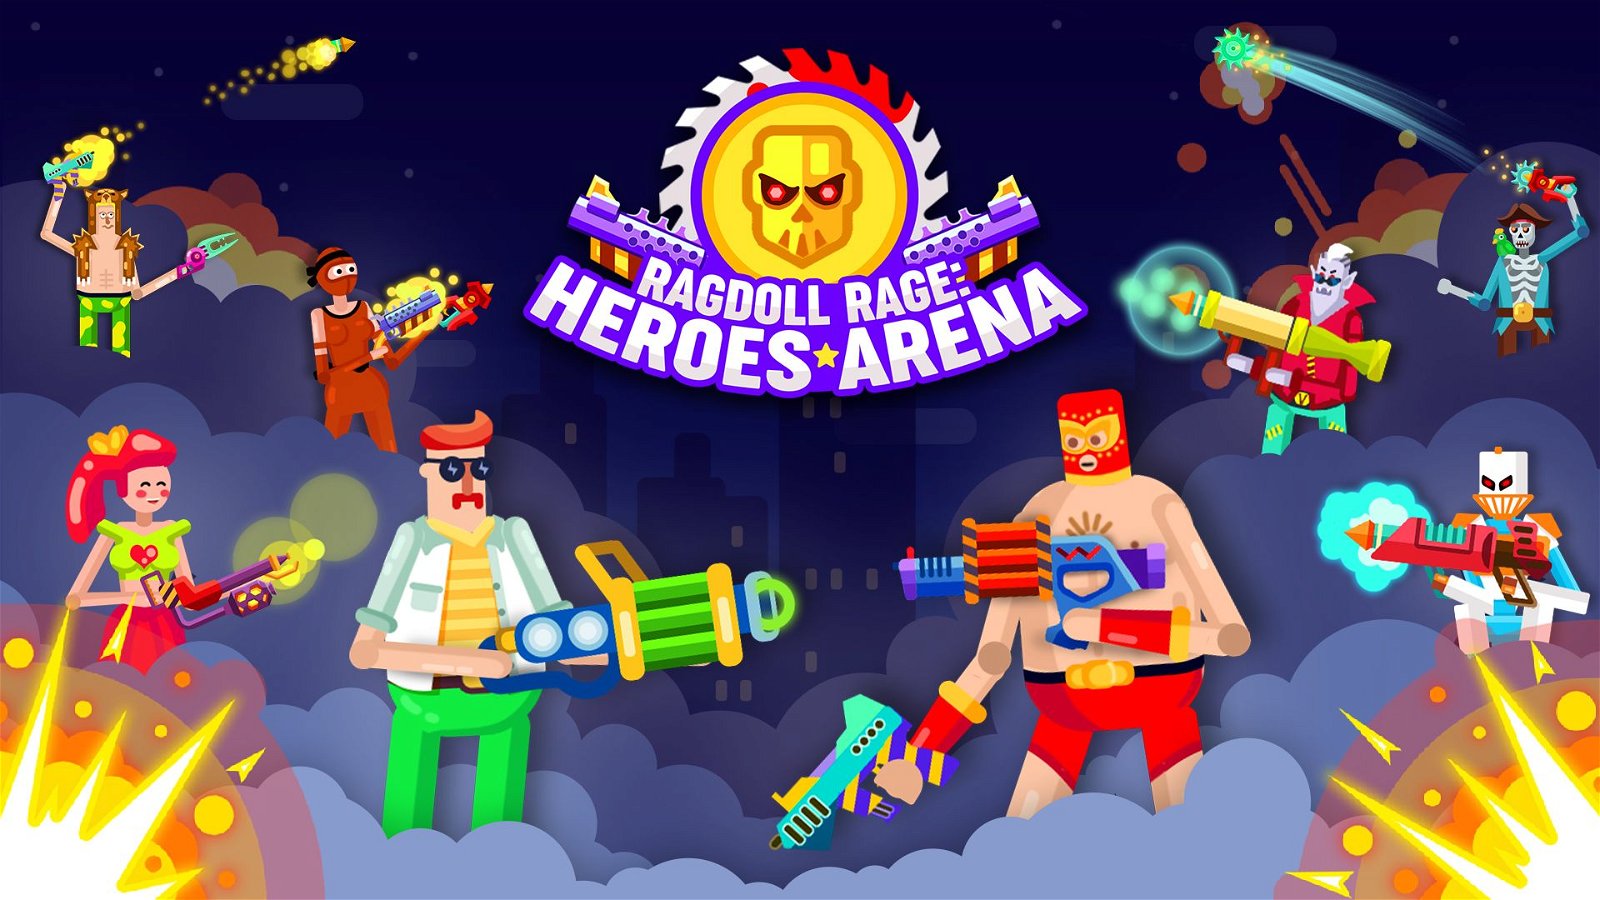 Image of Ragdoll Rage: Heroes Arena